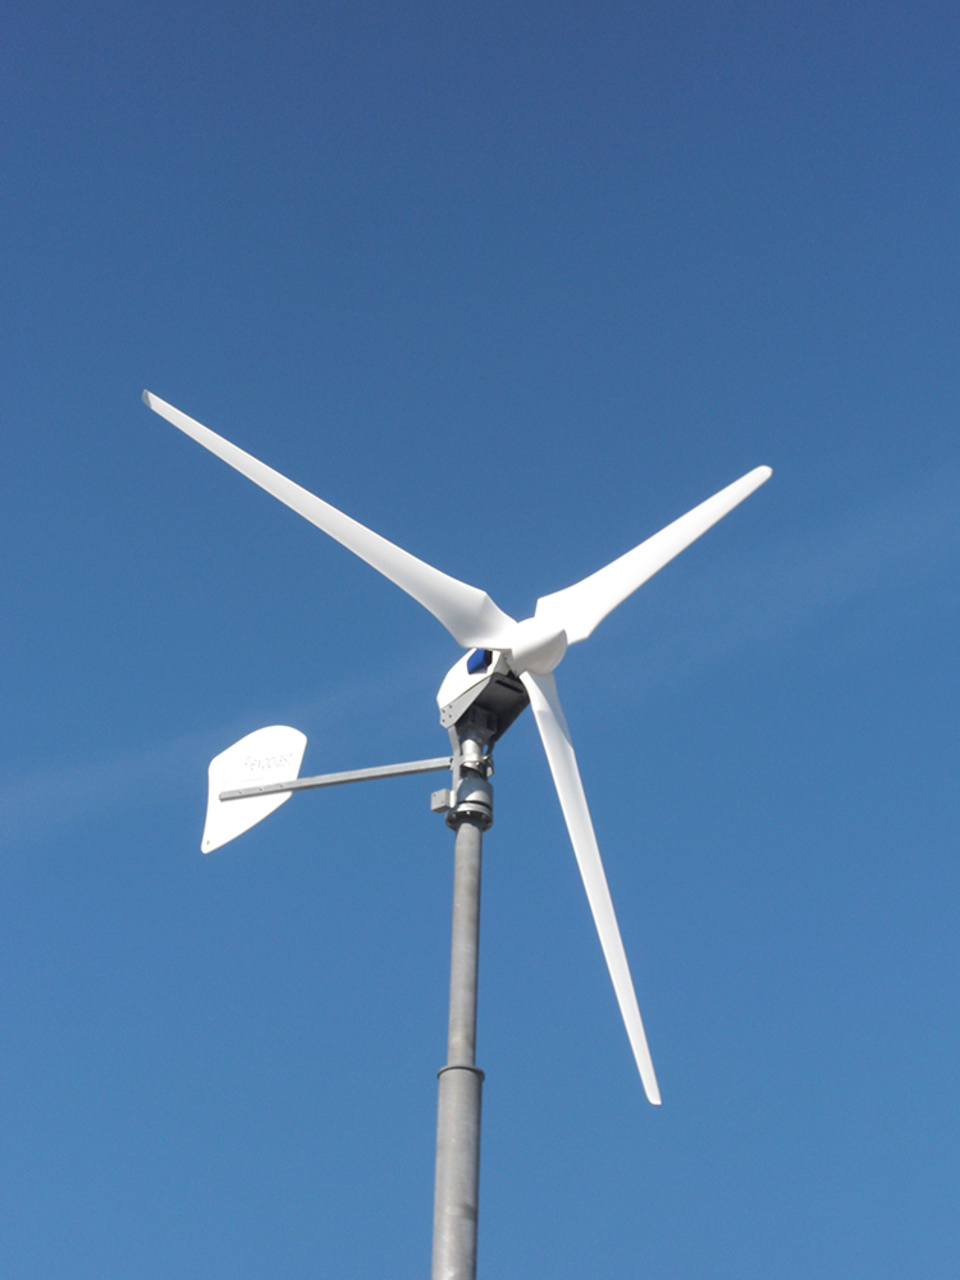 Windkraft2 bei ALL IN ONE Elektro & IT Technologie GmbH in Frankfurt am Main